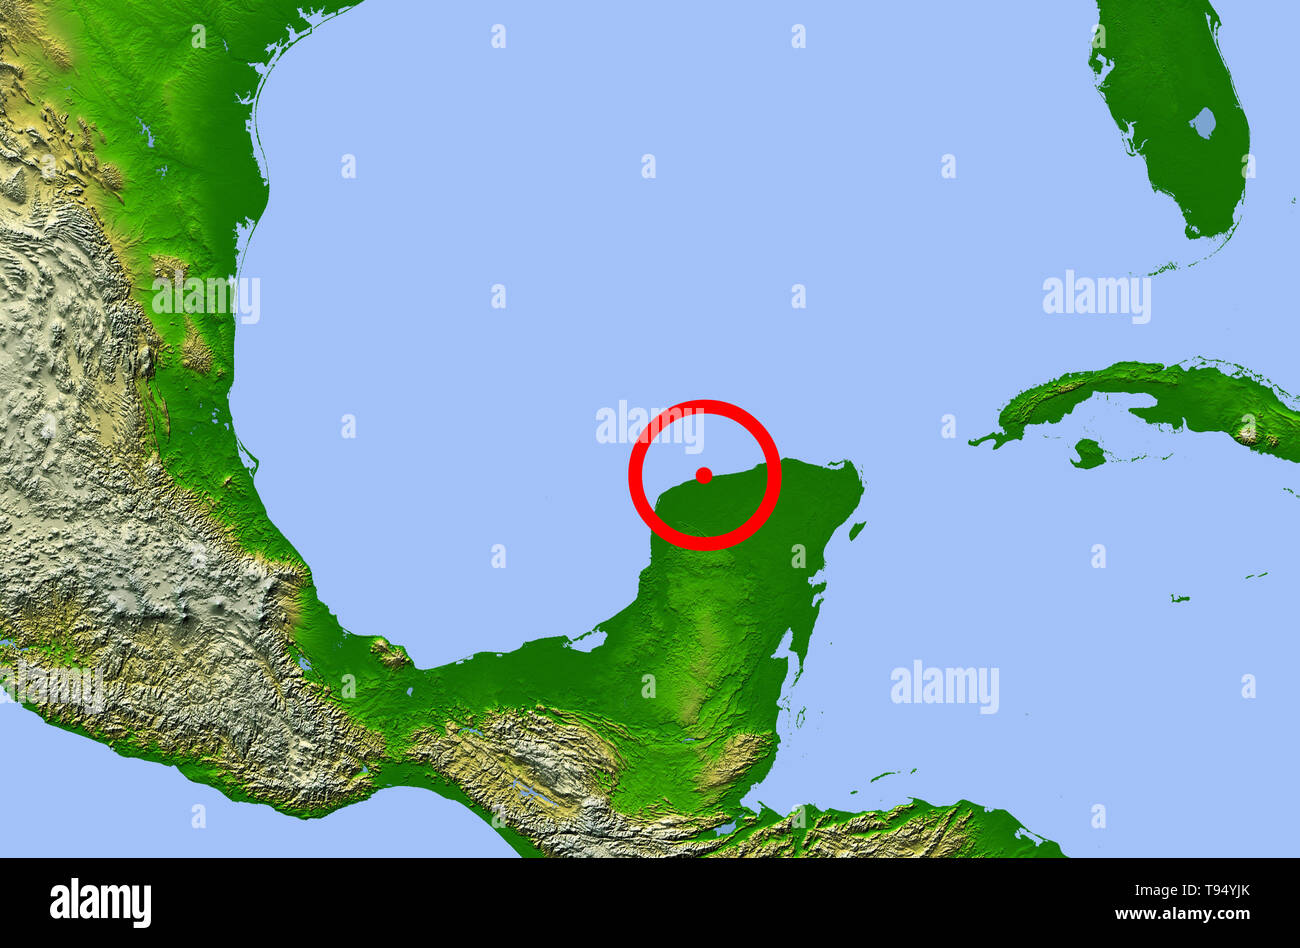 Il cratere Chicxulub. Mappa che mostra la posizione del Chicxulub cratere da impatto (centro) sulla penisola dello Yucatan, Messico. Questo impatto può avere causato l'estinzione dei dinosauri e di 70% di terra tutte le specie di 65 milioni di anni fa. I quattro punti rossi rappresentano le città di (da sinistra a destra): Città del Messico, Tempico (dove il materiale espulso dal cratere è stato trovato), avana e Miami. Foto Stock